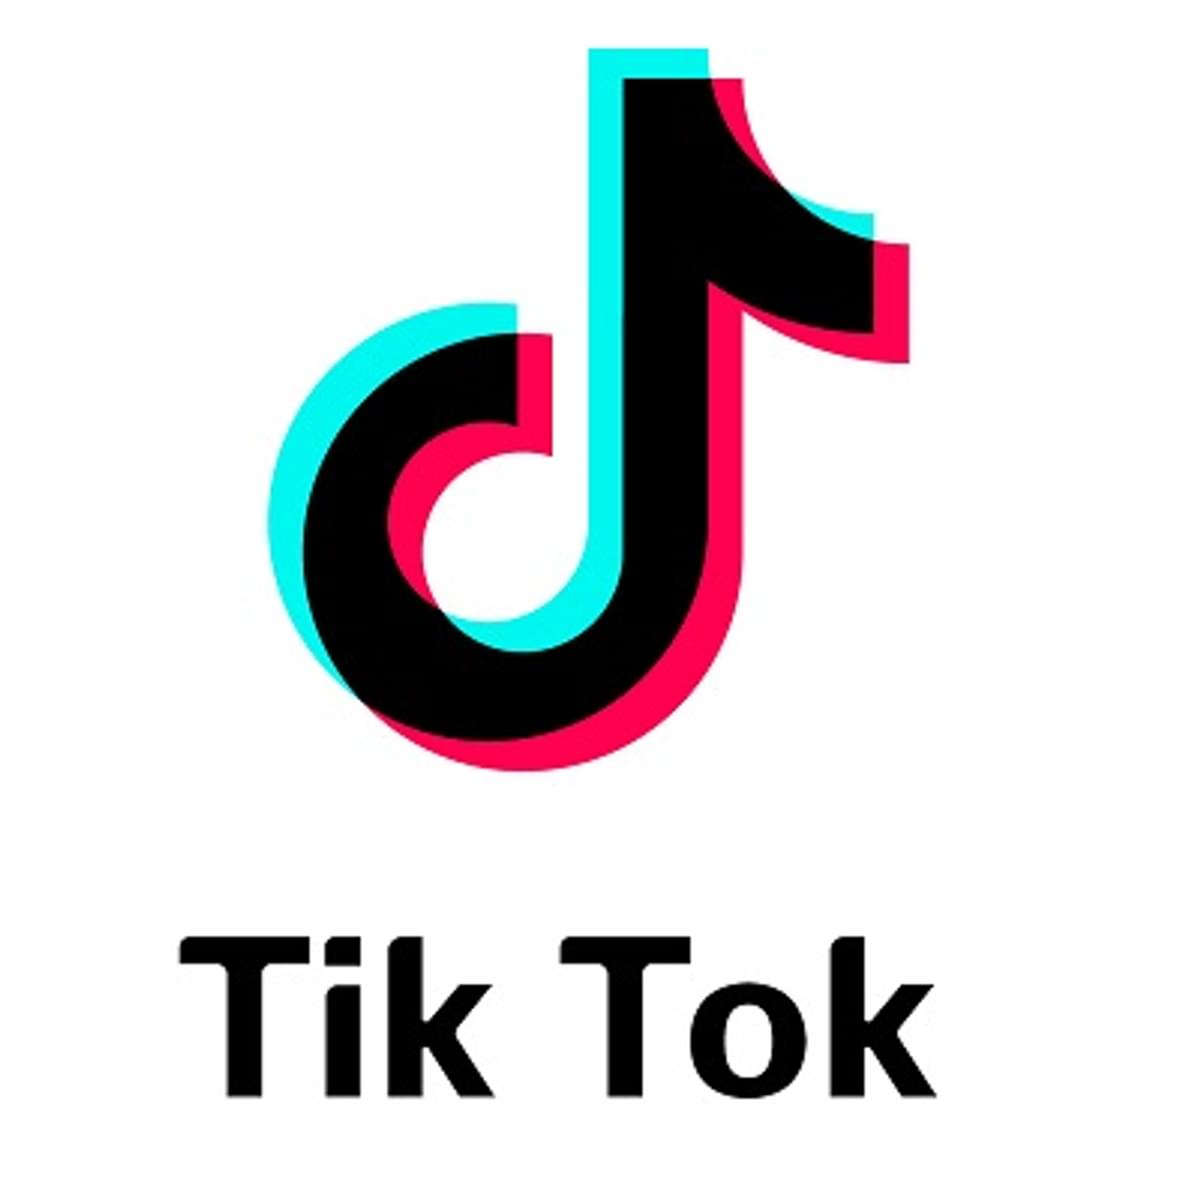 Baas streaming bij Disney wordt nieuwe topman TikTok image